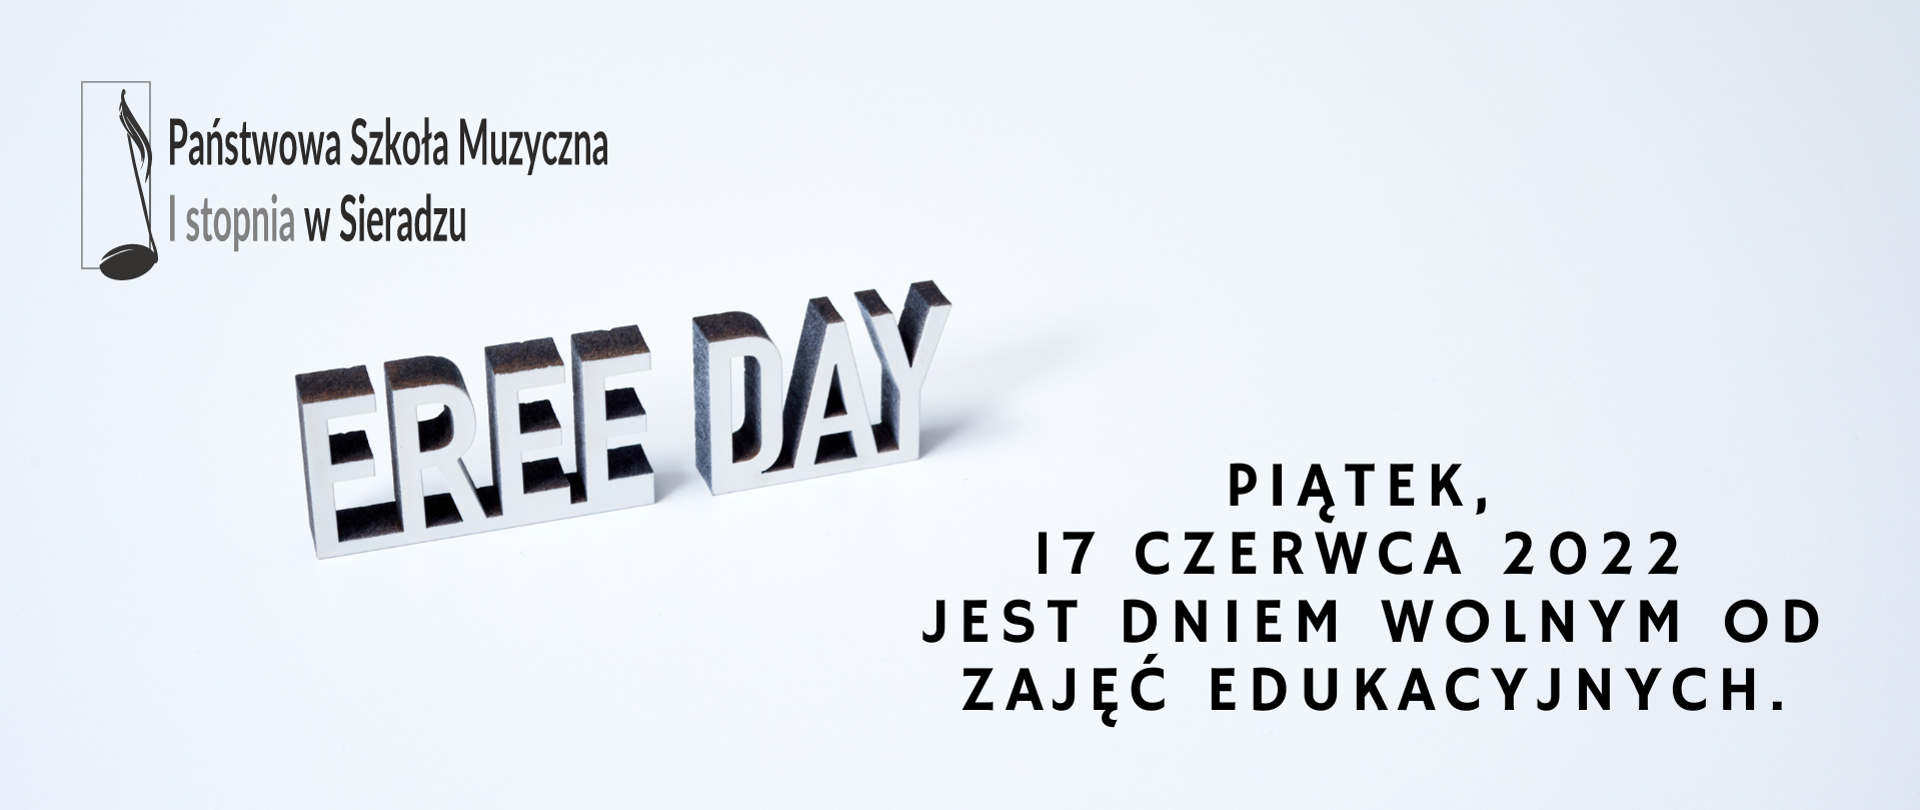 Na jasnoniebieskim tle w lewym, górnym rogu logo PSM I st. w Sieradzu, na środku stylizowany napis Free Day, w prawym dolnym rogu czarnymi literami napis: piątek, 17 czerwca 2022 jest dniem wolnym od zajęć edukacyjnych.